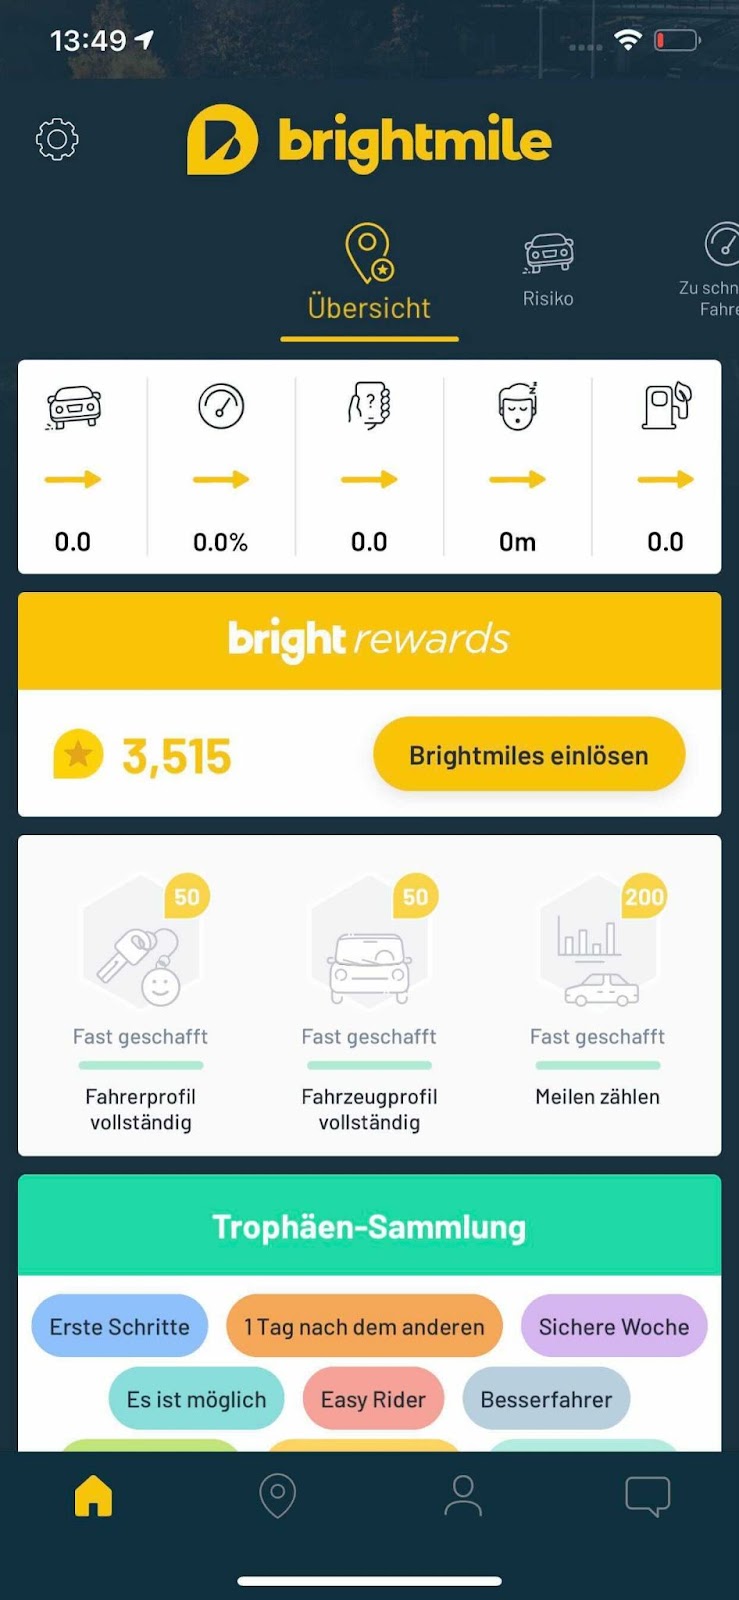 Brightmile App in German